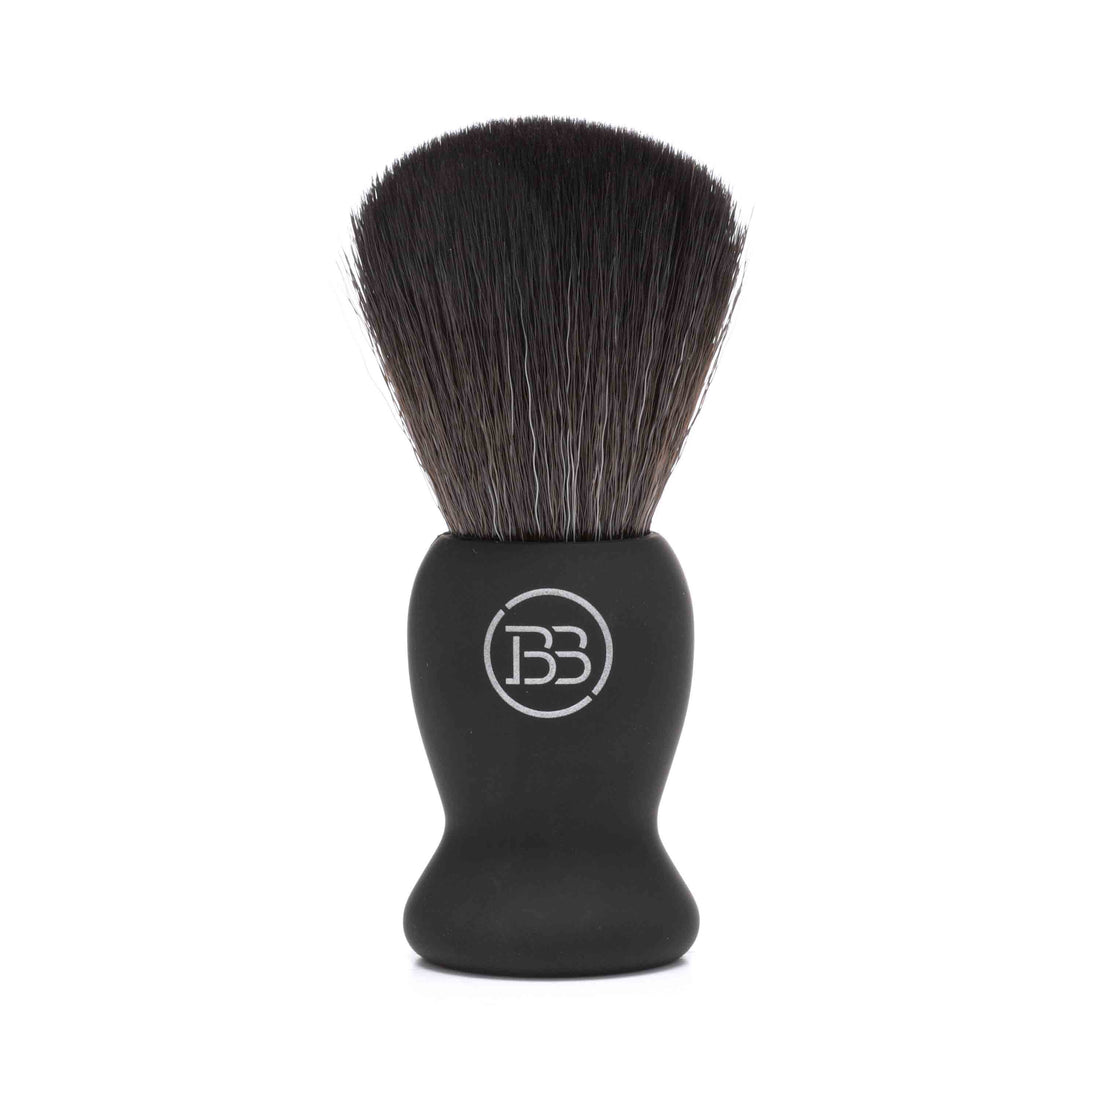 Black Shaving Brush by Battle Brothers Shaving Co. - Dapper Guru